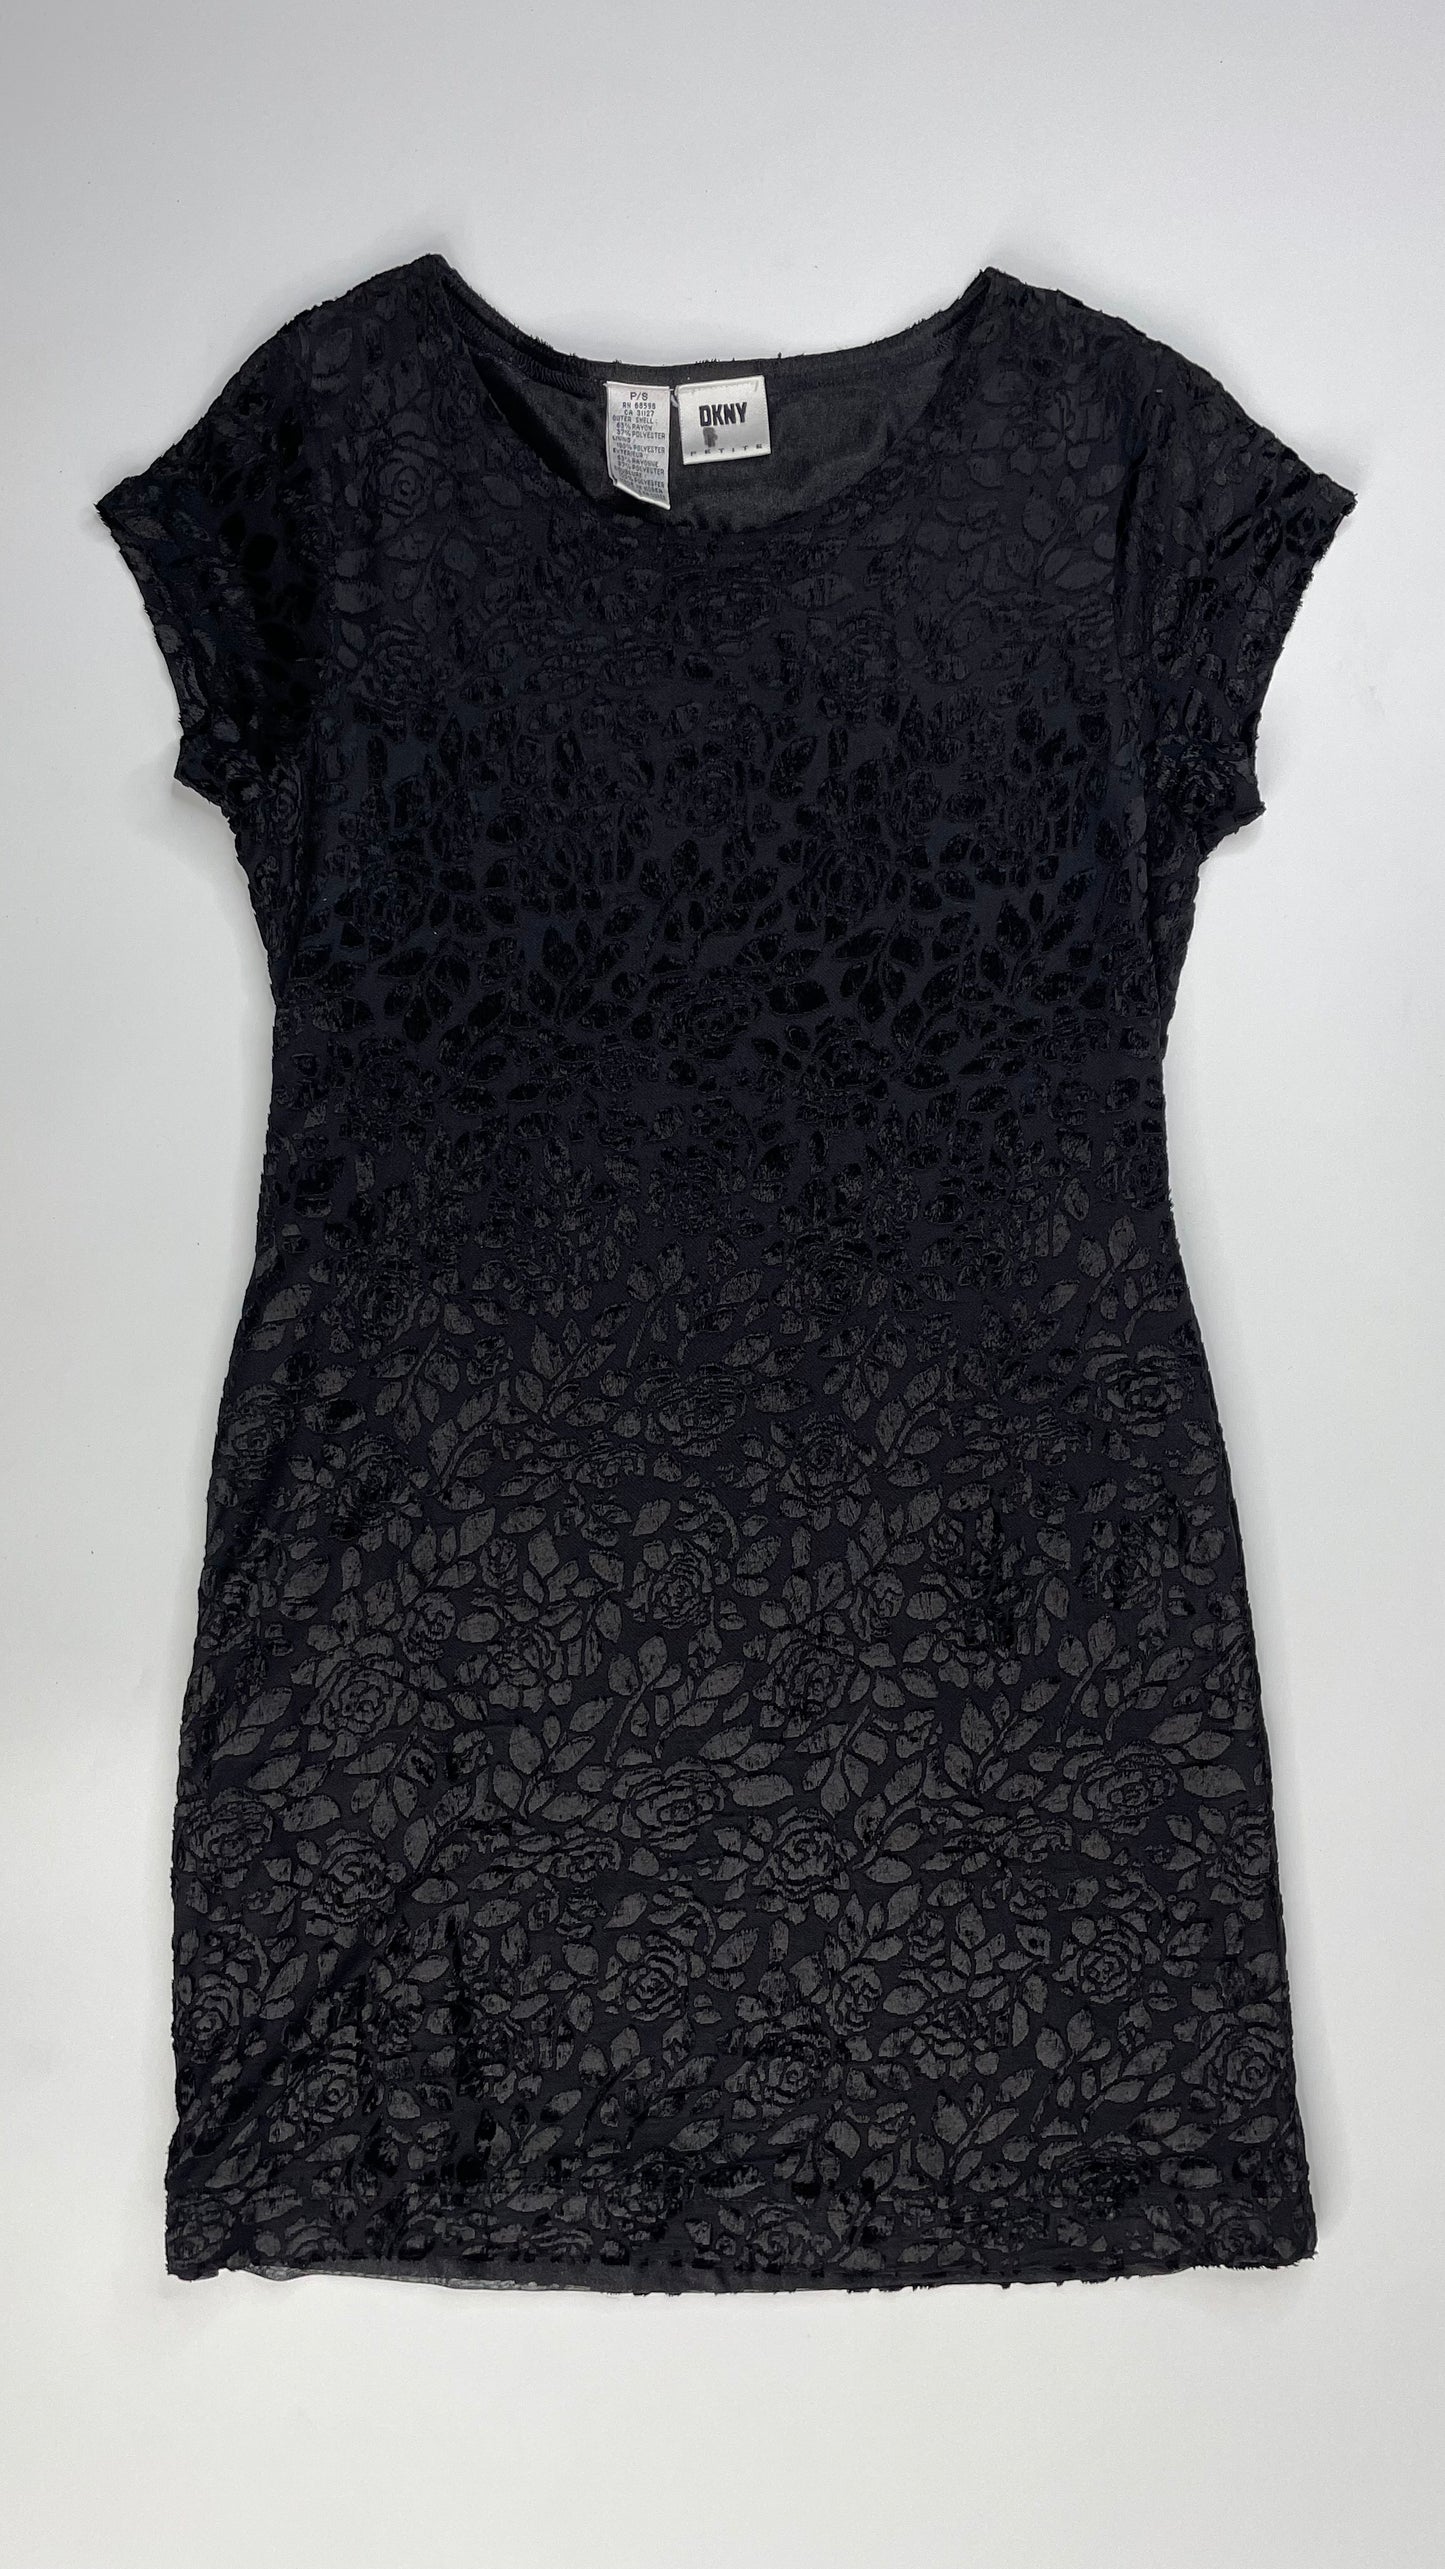 Vintage 90s DKNY black rose burnout velvet knit mini t shirt dress - Size S